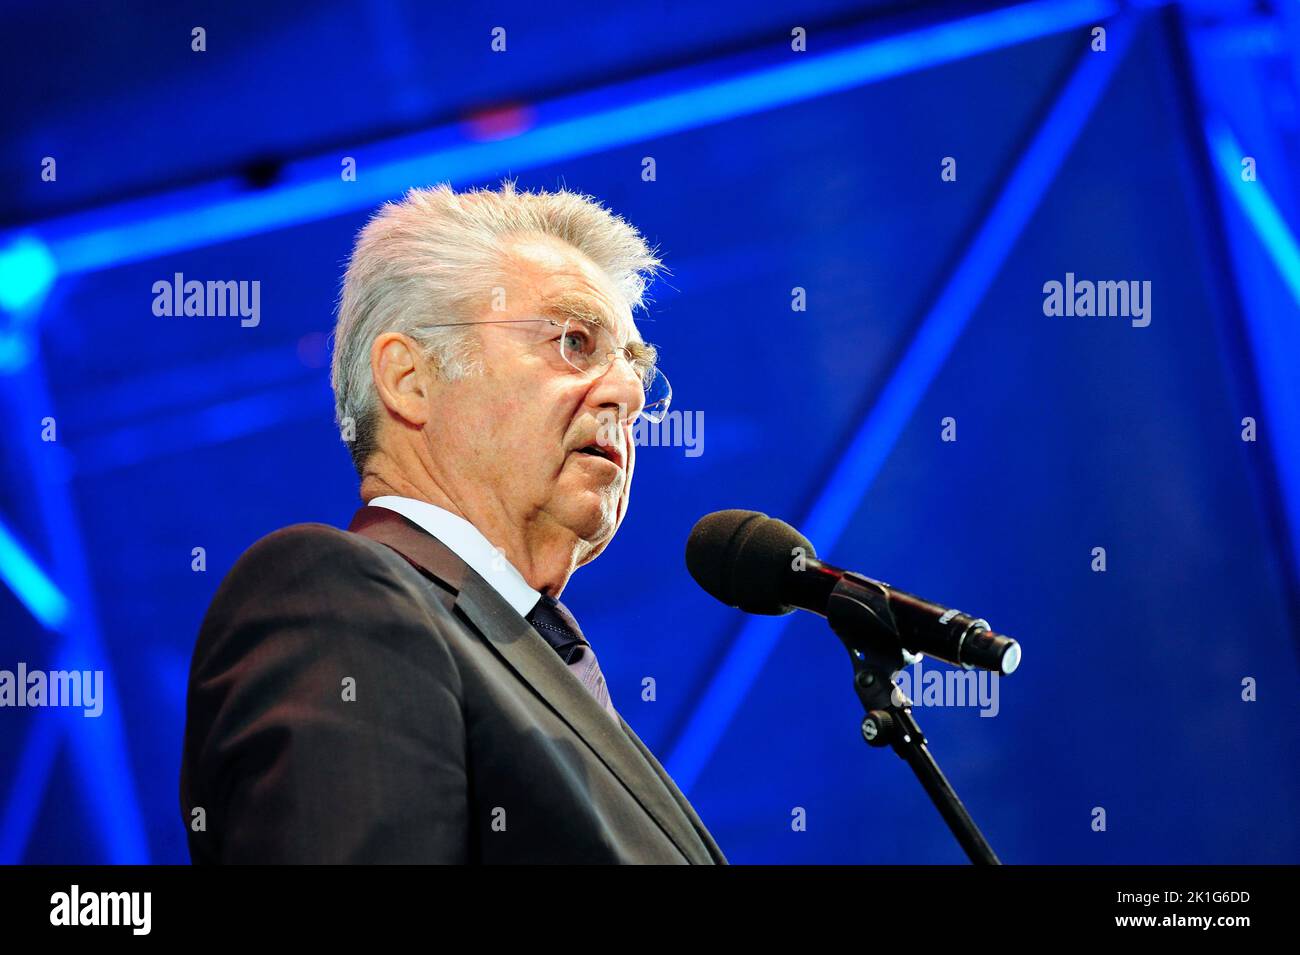 Viena, Austria. 08 de mayo de 2015. Heinz Fischer, Presidente Federal de la República de Austria de 2004 a 2016 Foto de stock